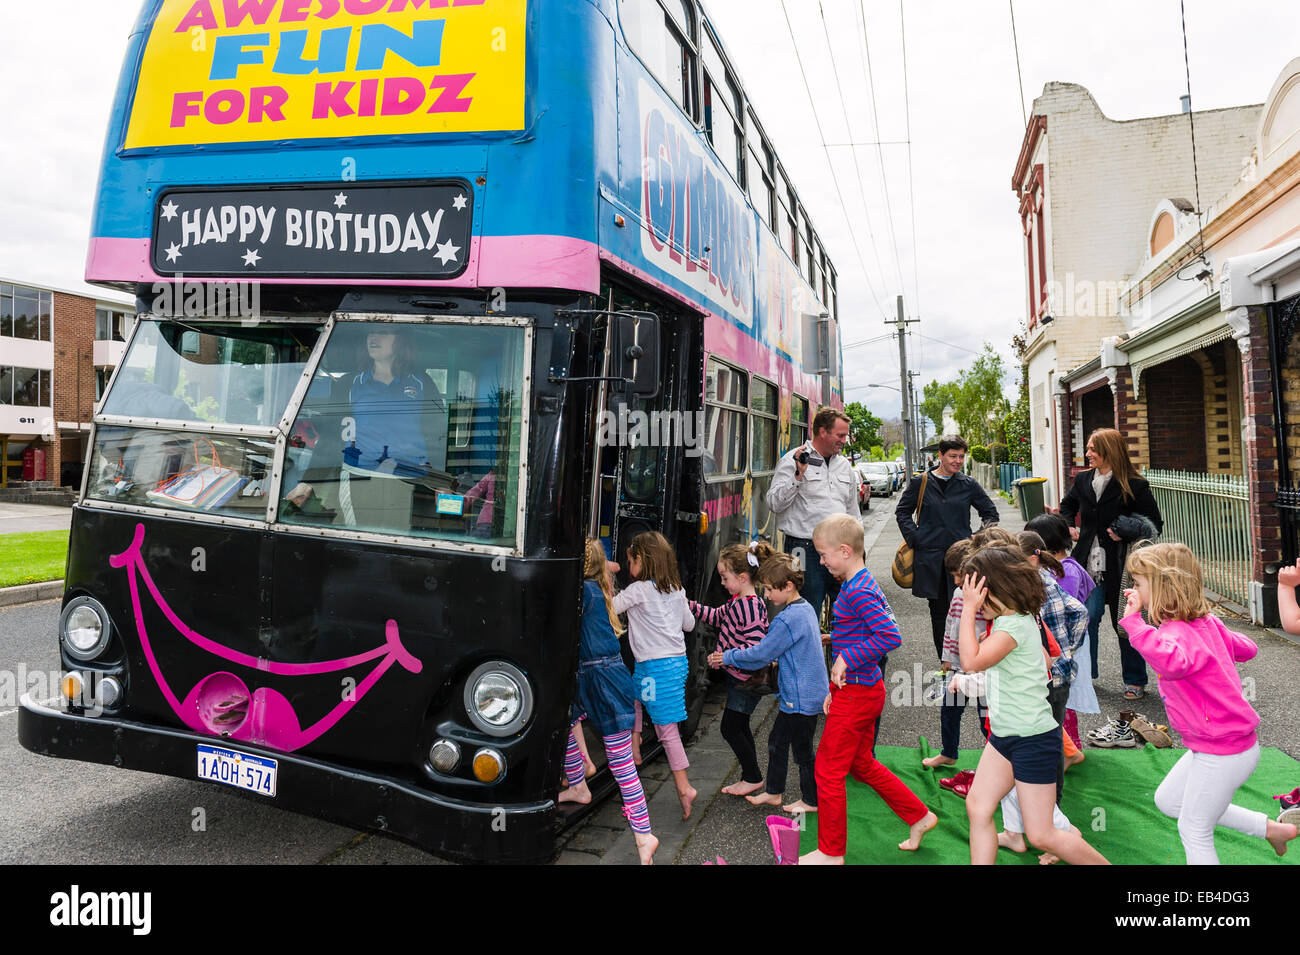 Bambini rush su un autobus a due piani trasformato in una festa di compleanno luogo per attività ginniche. Foto Stock